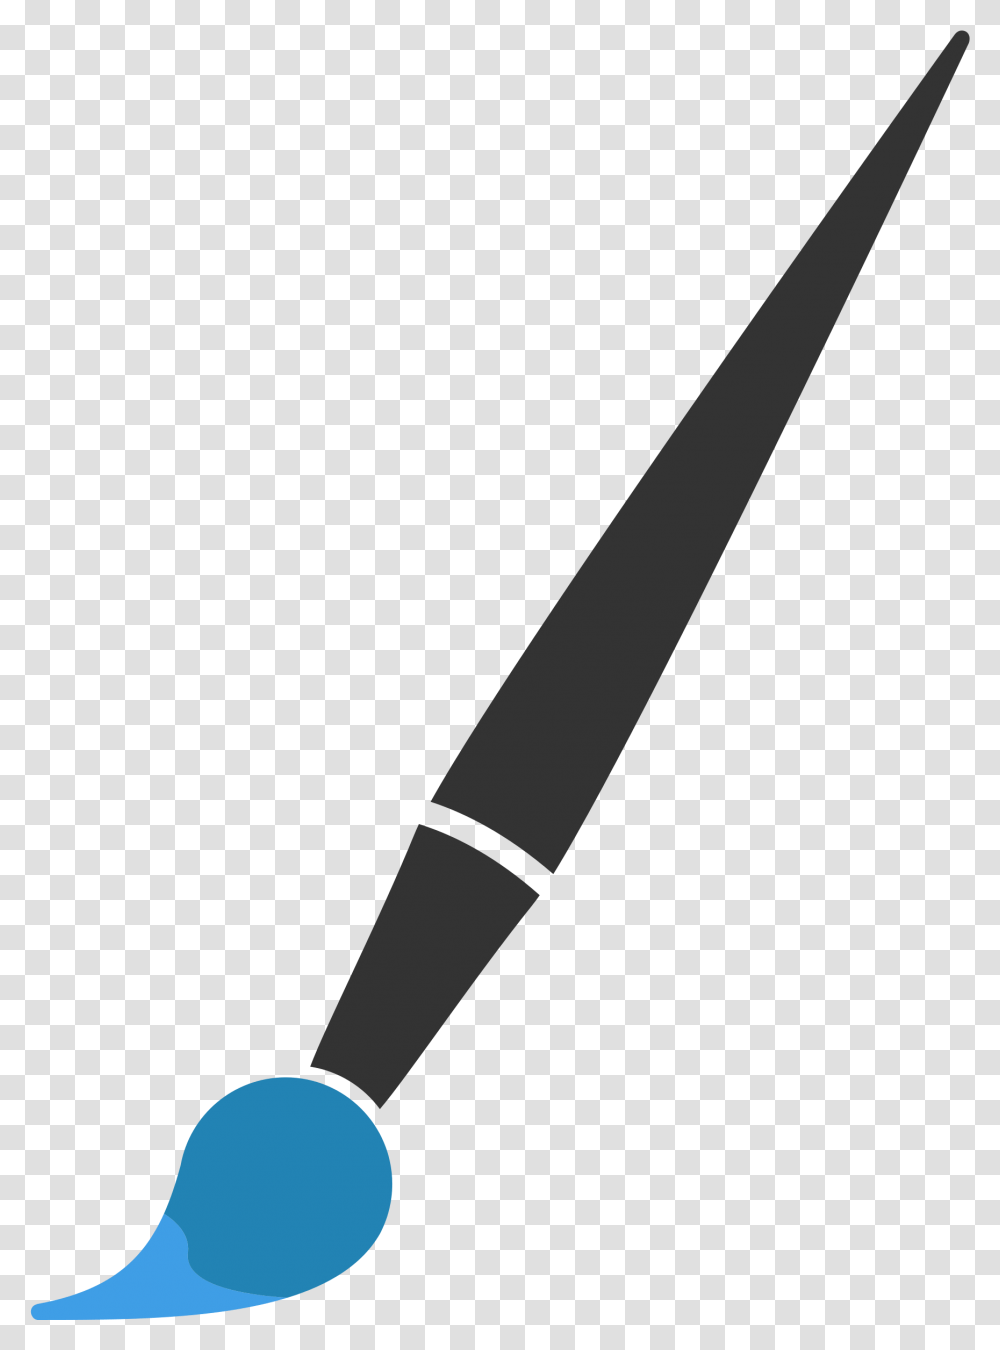 Paint Brush Vector, Pen, Scissors, Blade, Weapon Transparent Png